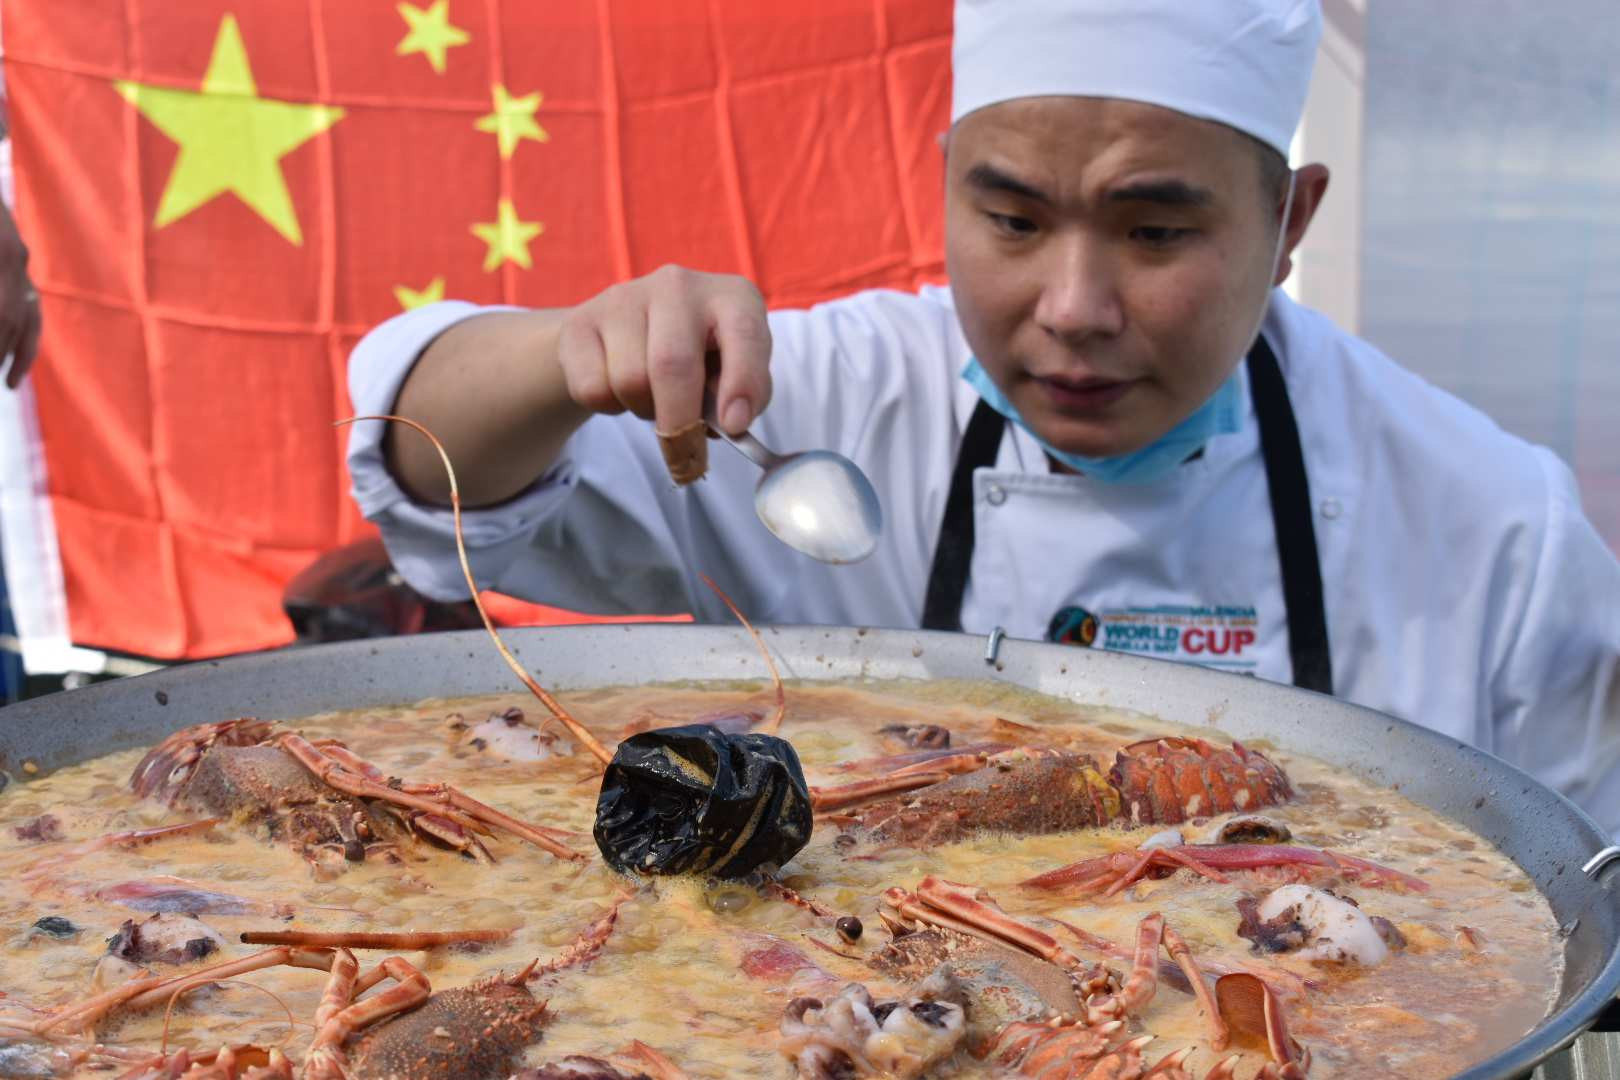 El chef chino llegó a la final y preparó una paella tradicional valenciana.